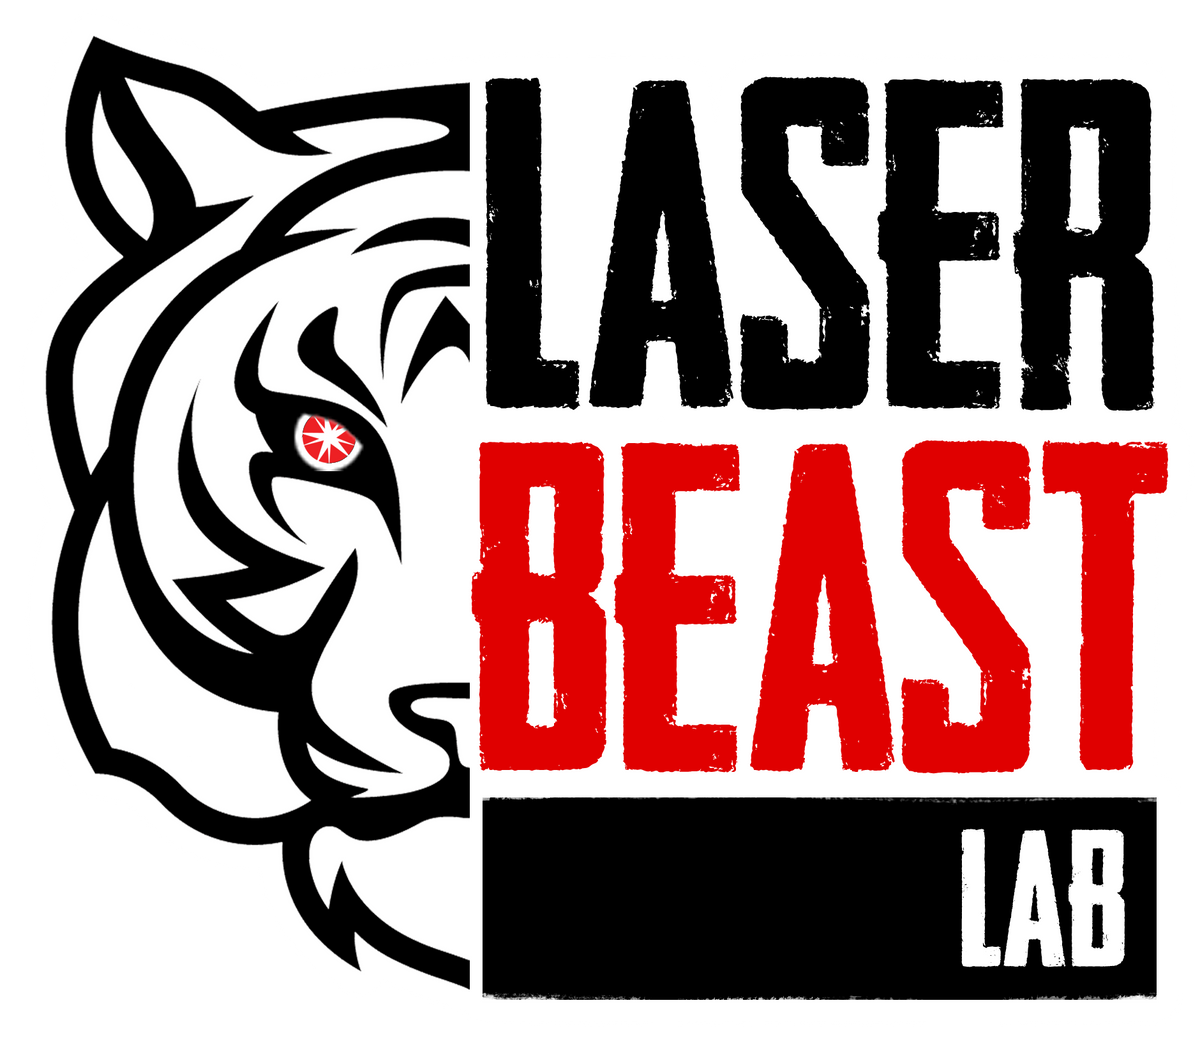 Blank metal multi-layer “herb” grinder – LaserBeast Lab